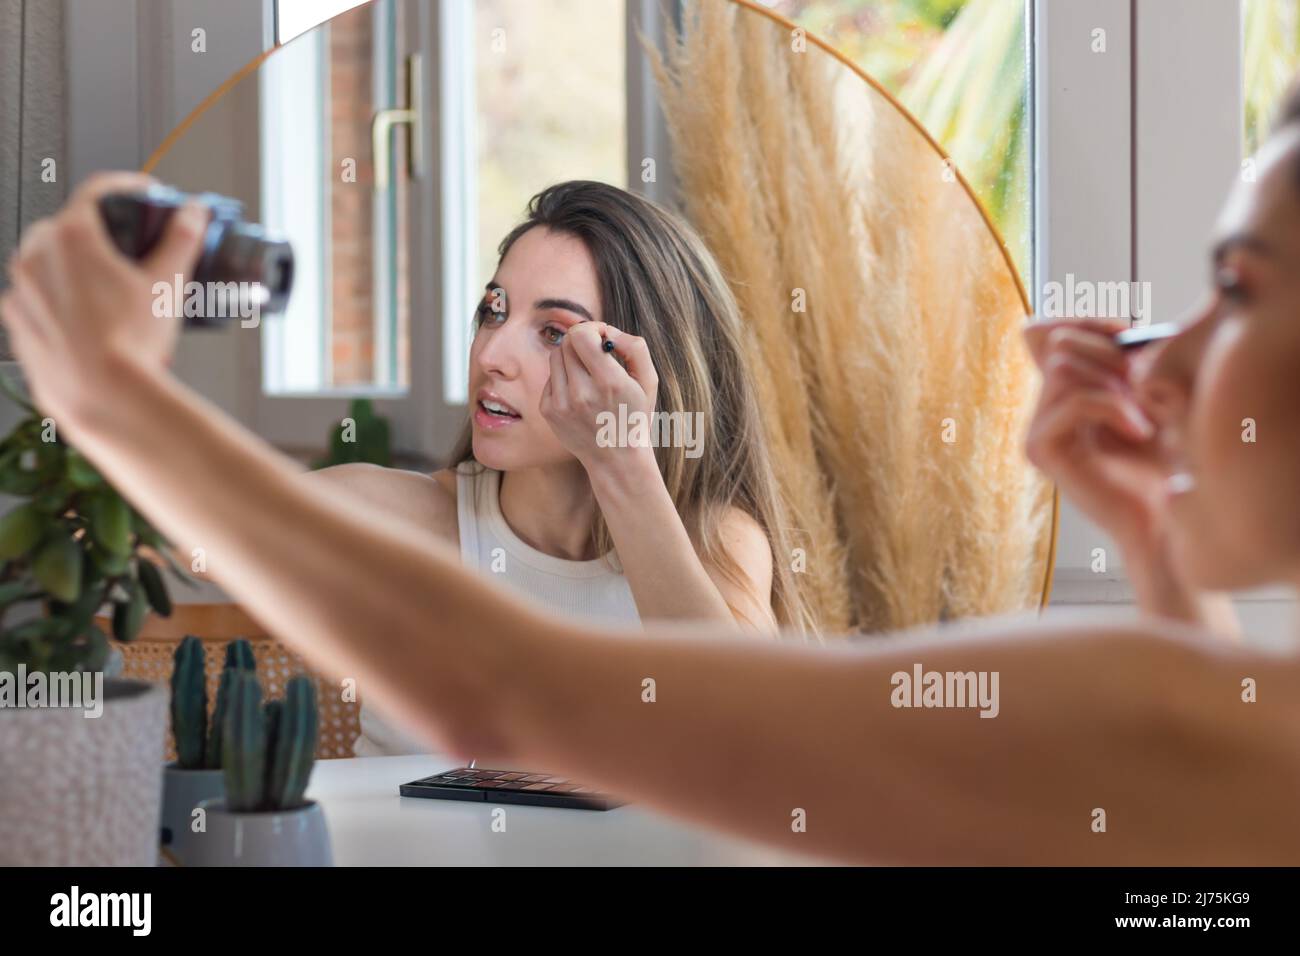 Junge schöne Frau tut ihr Make-up und Lidschatten, während sie kosmetische Bewertung und hält Vlogging-Kamera Stockfoto